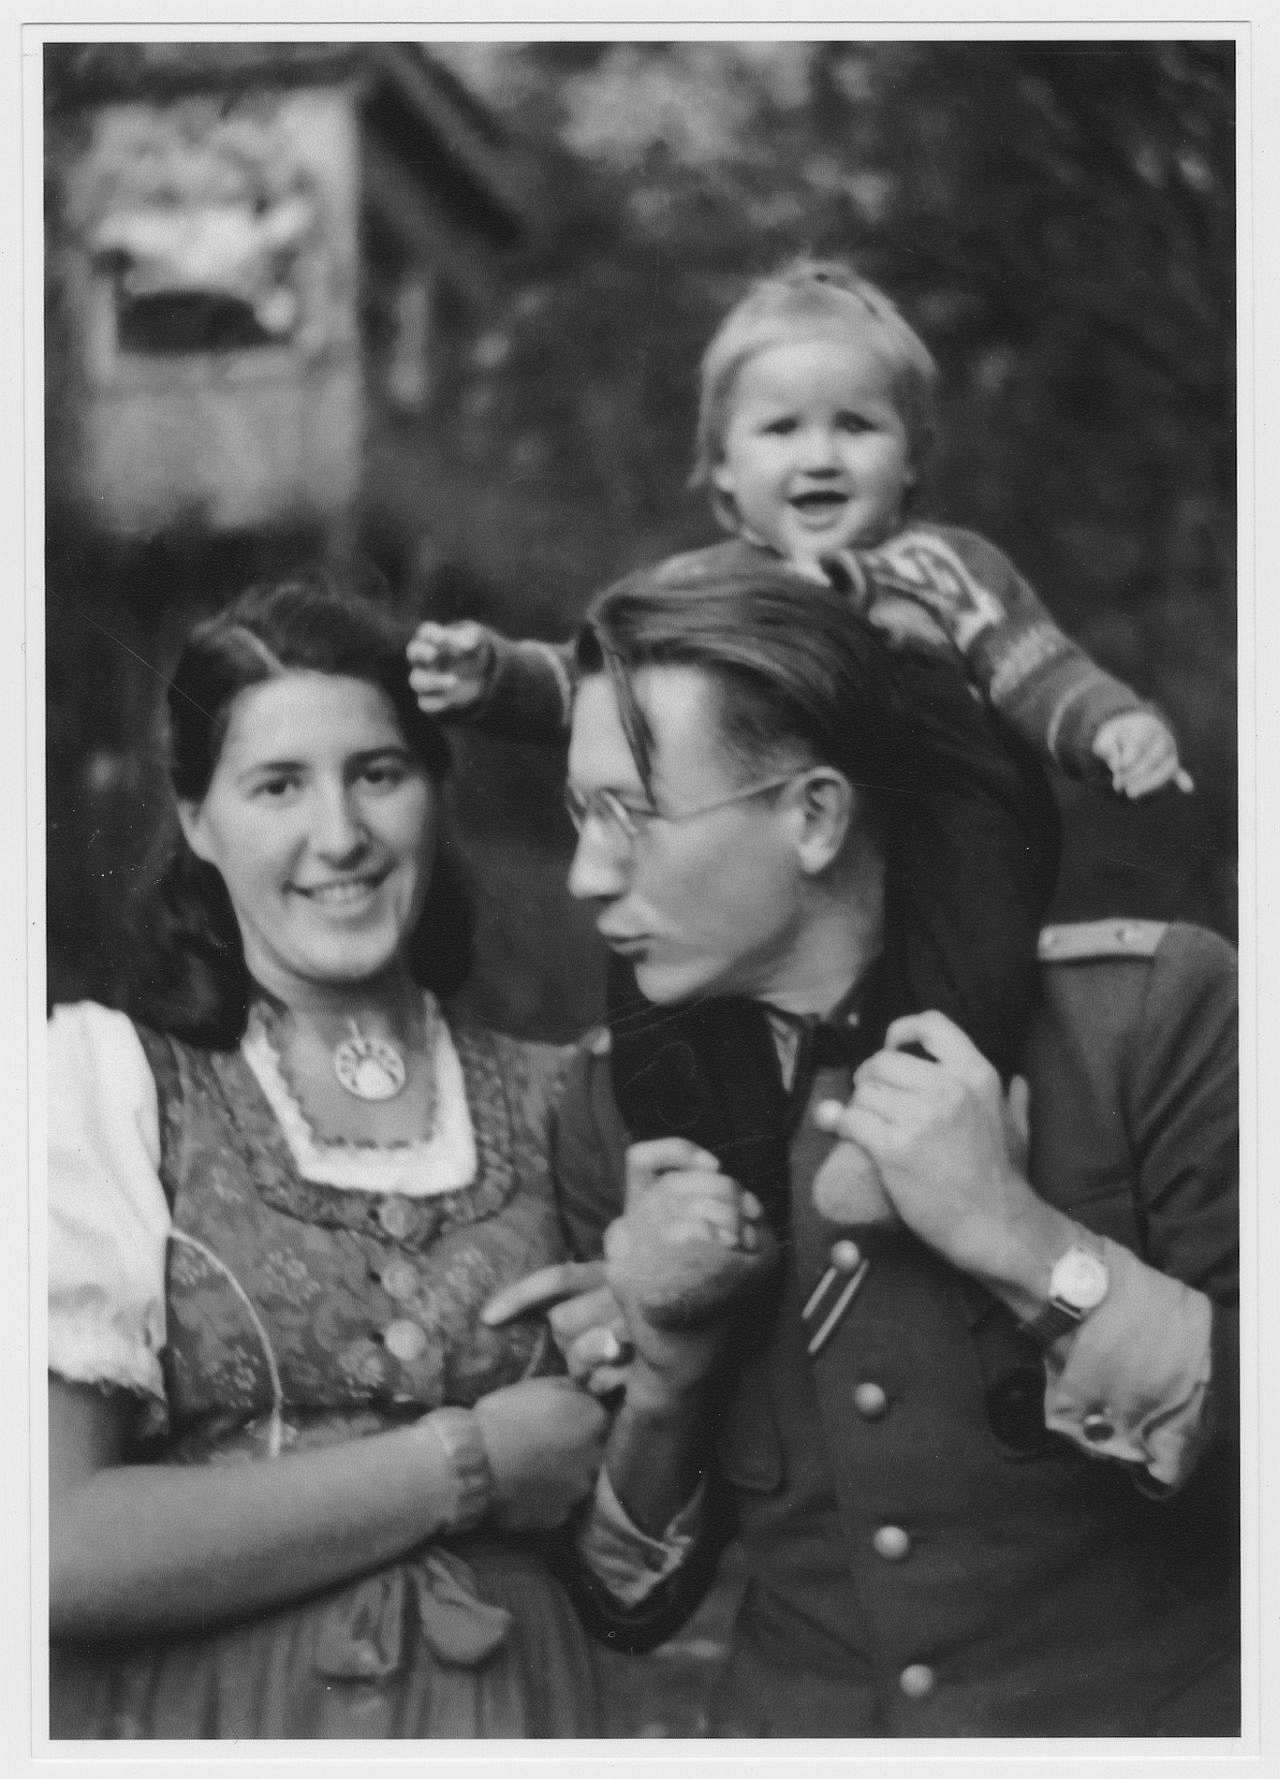 Schwarz-weiß Fotografie, Helmut Beschke mit Ehefrau Eva-Maria und Tochter Renate Beschke im Dezember 1944 in Jena.